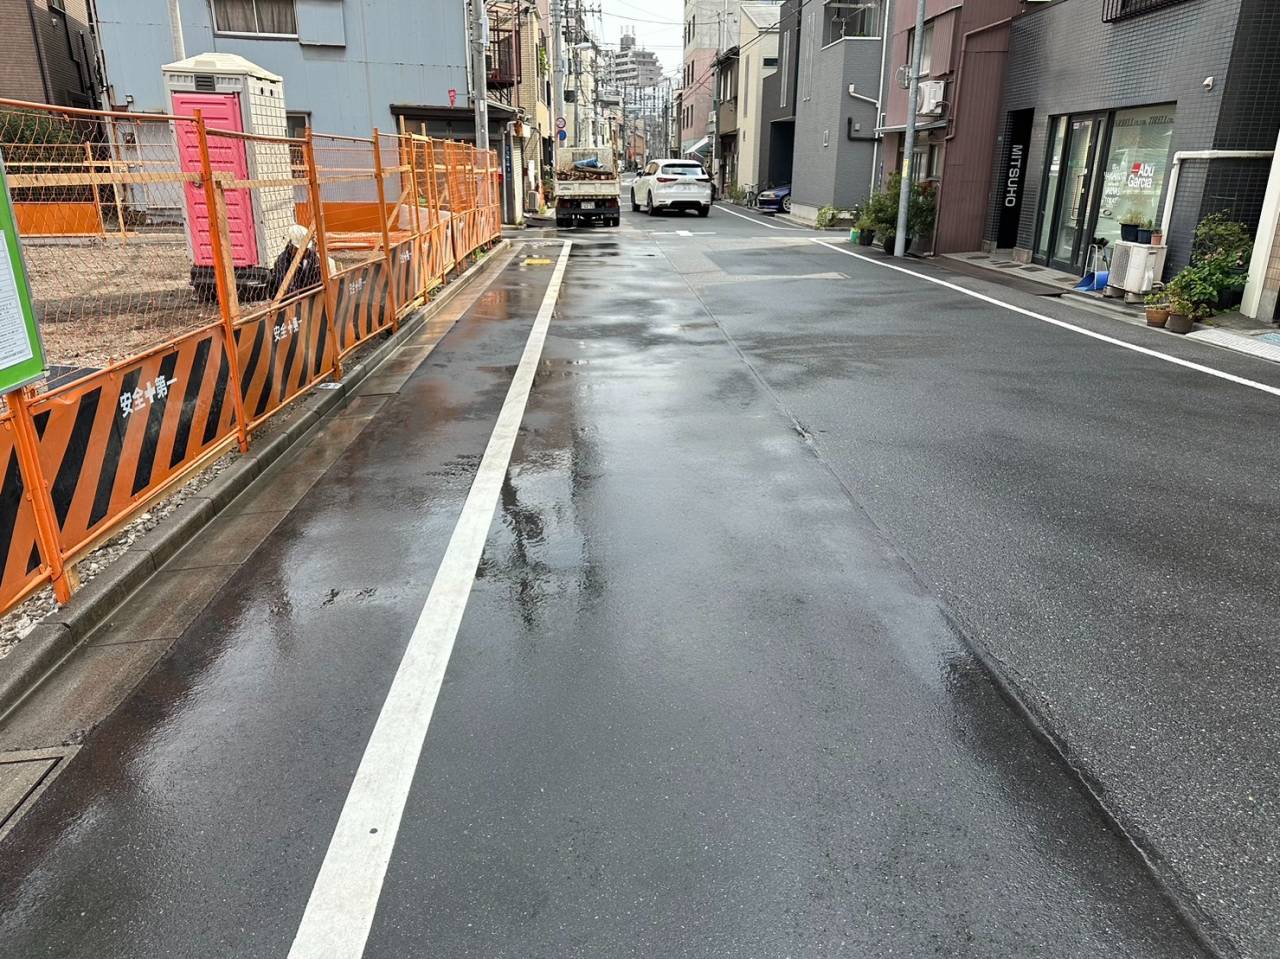 東京都台東区三ノ輪の木造一部３階建物解体工事が終了しました。